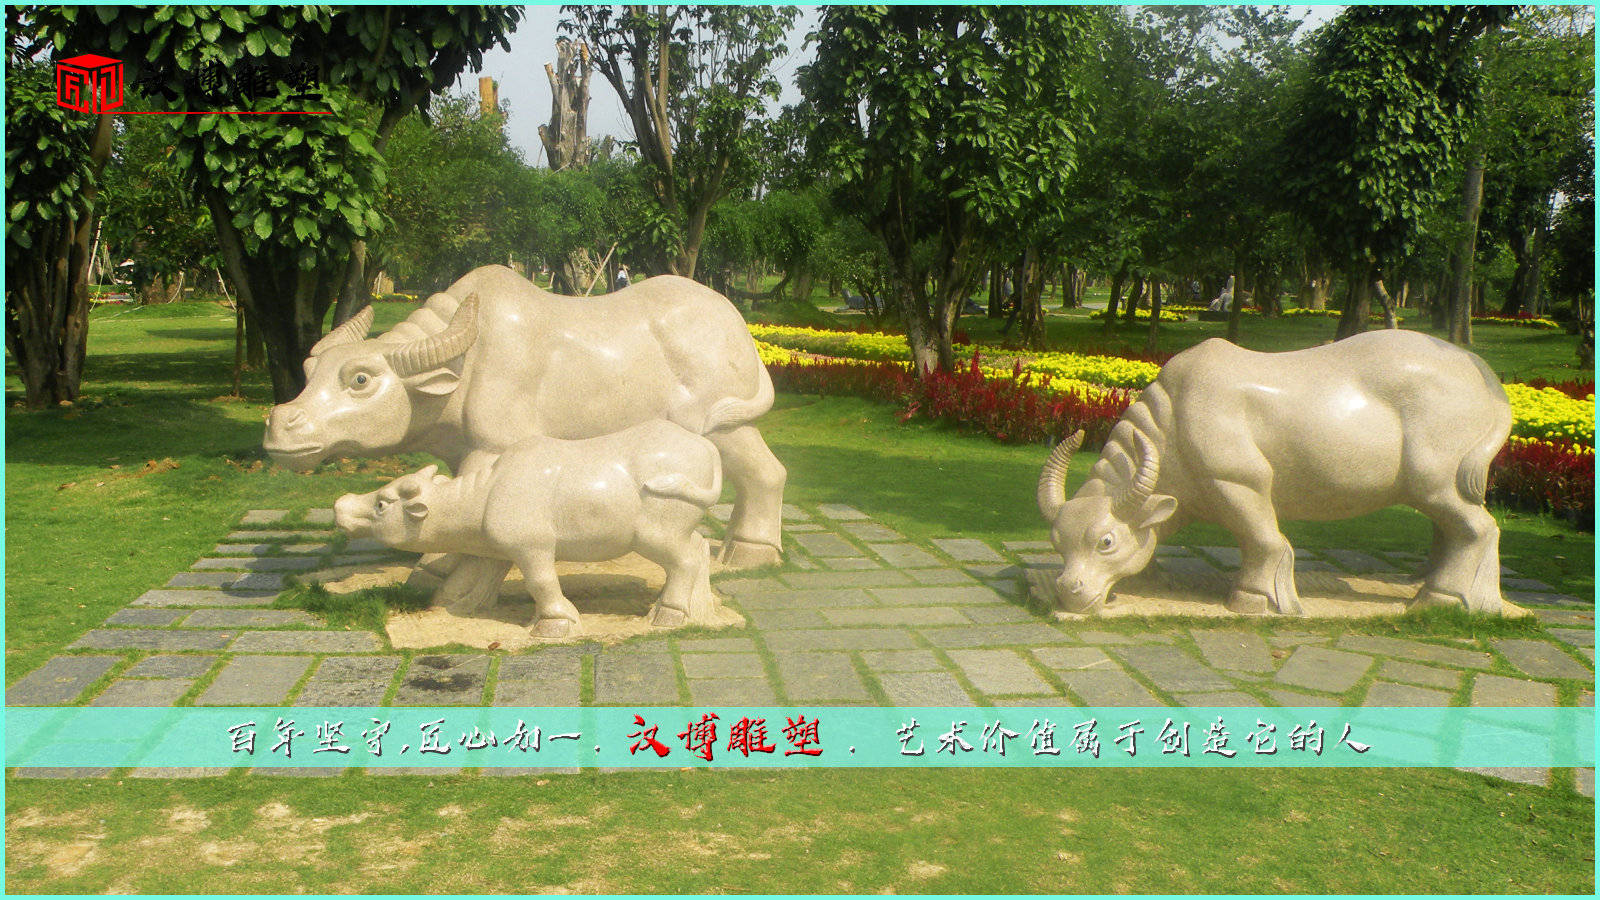 群牛石雕,传统工艺雕像,园林景观雕塑